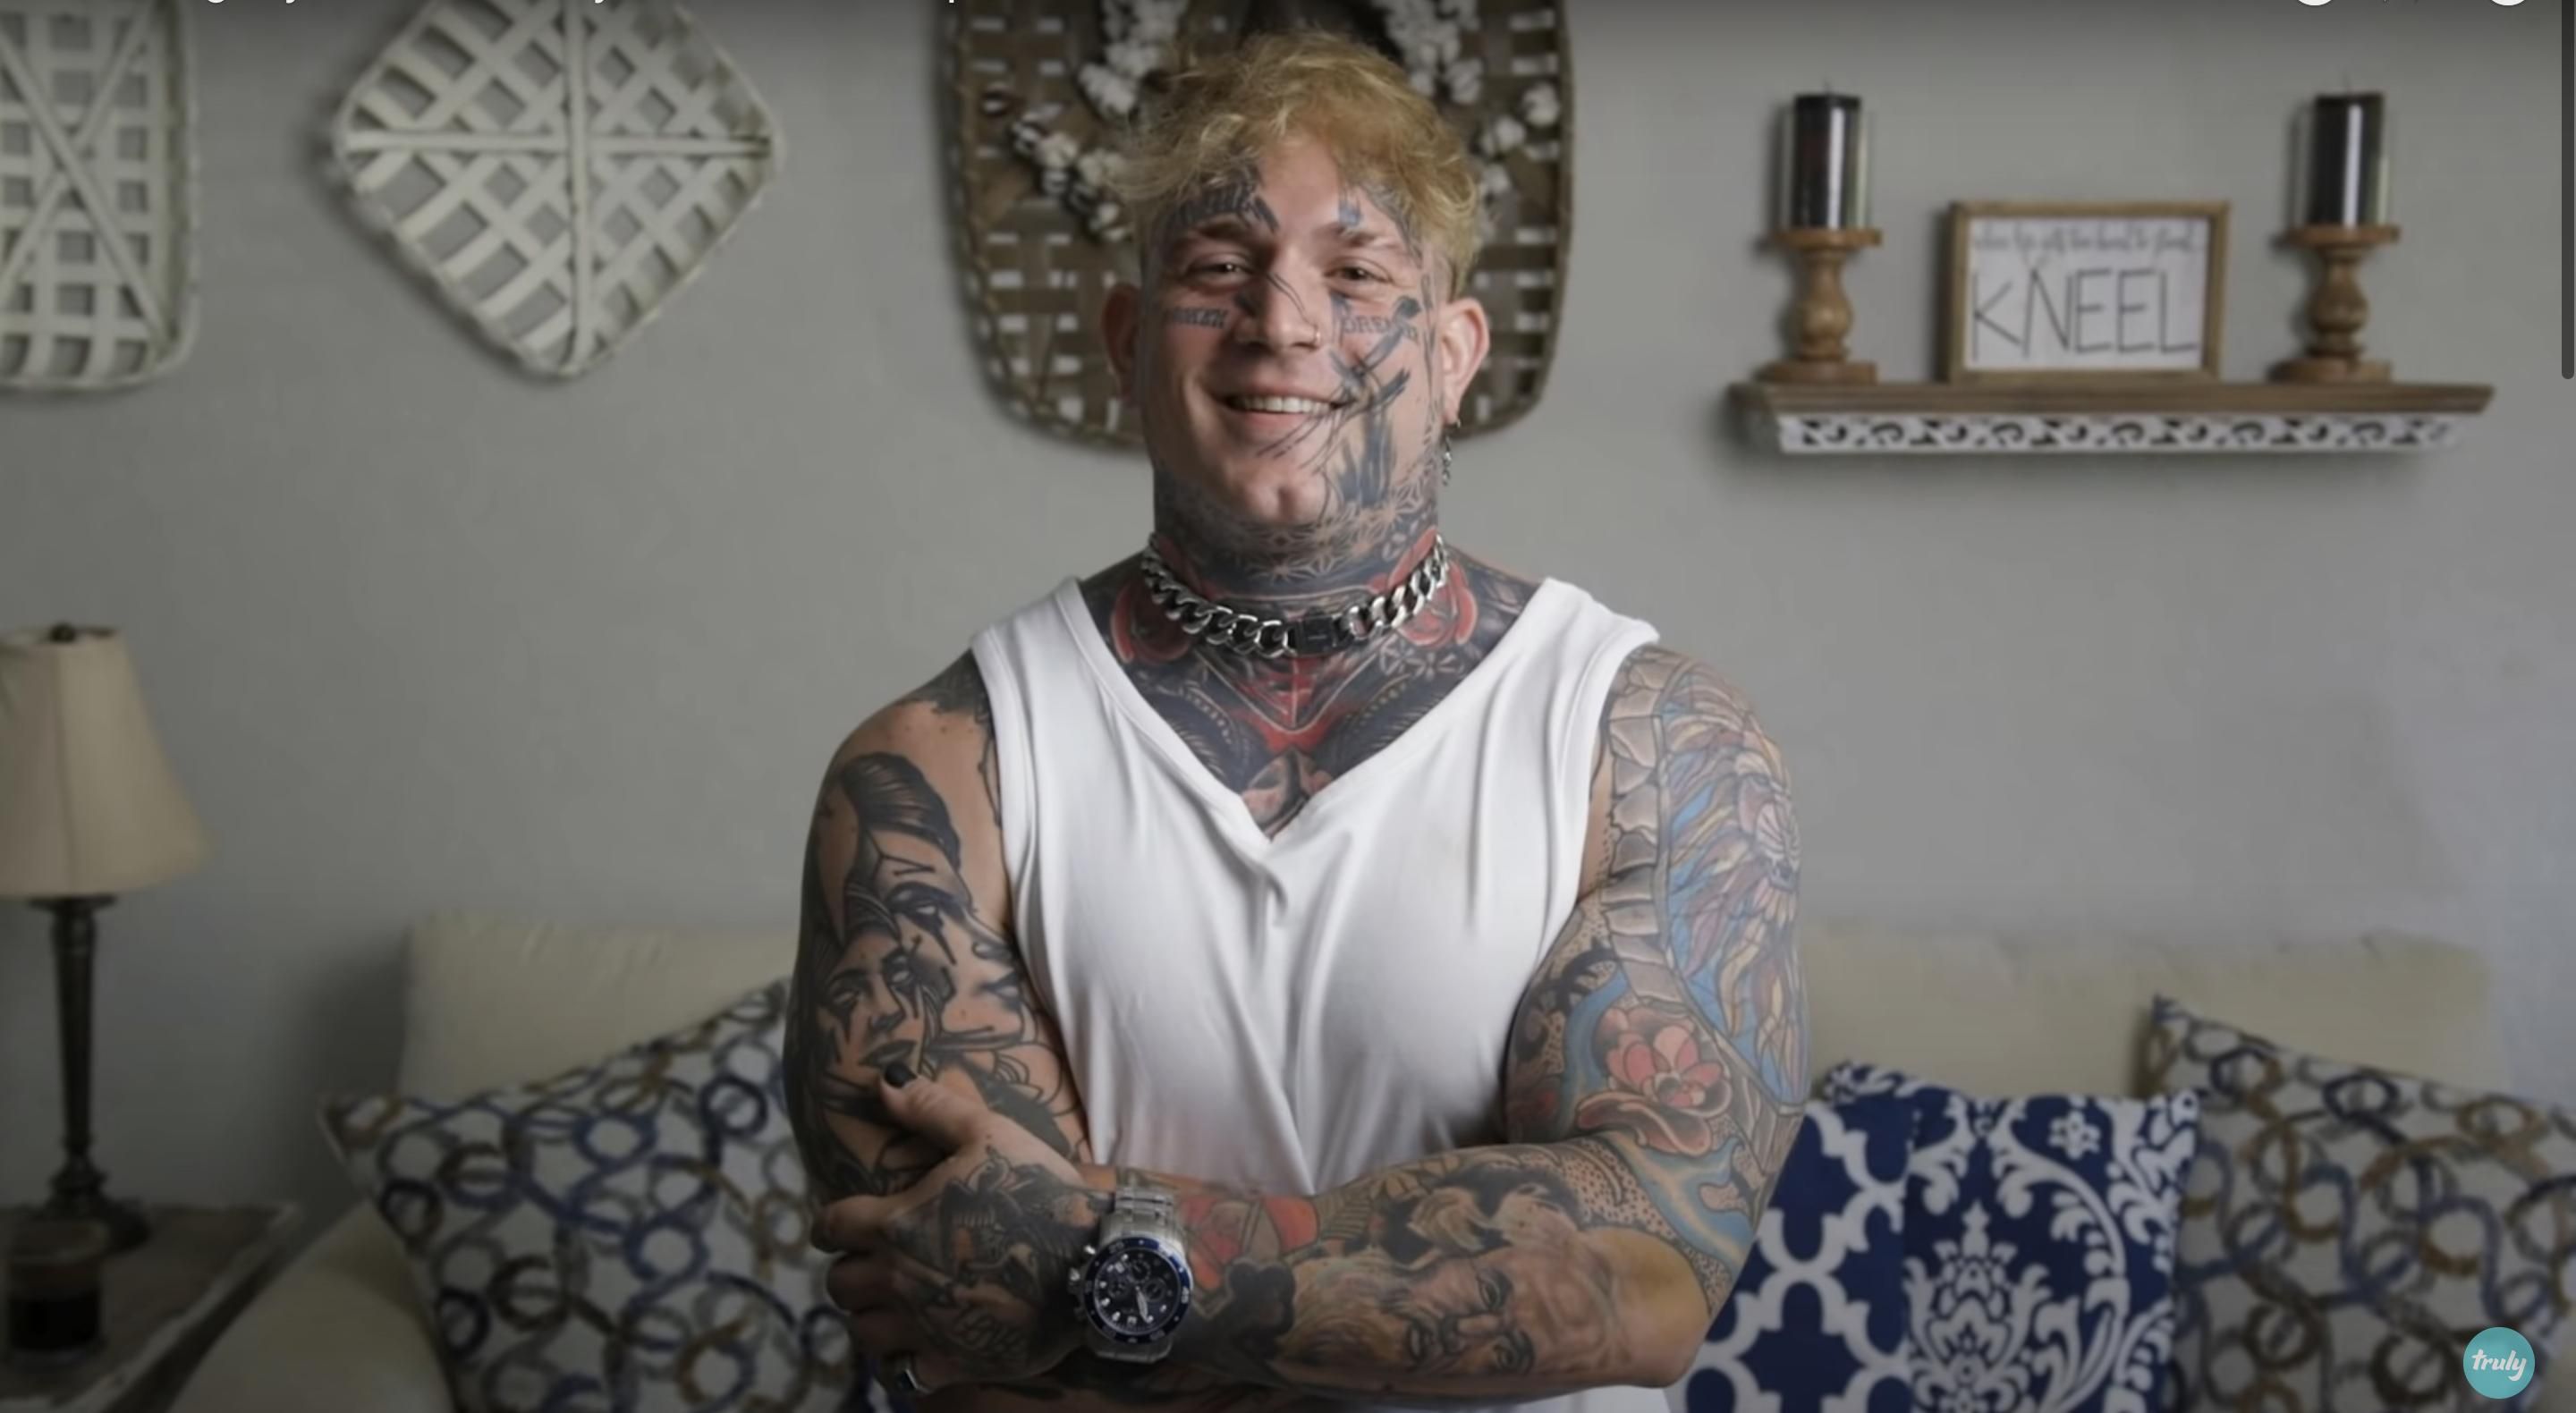 Син покрив тіло гримом, щоб мама побачила його без татуювань – відео